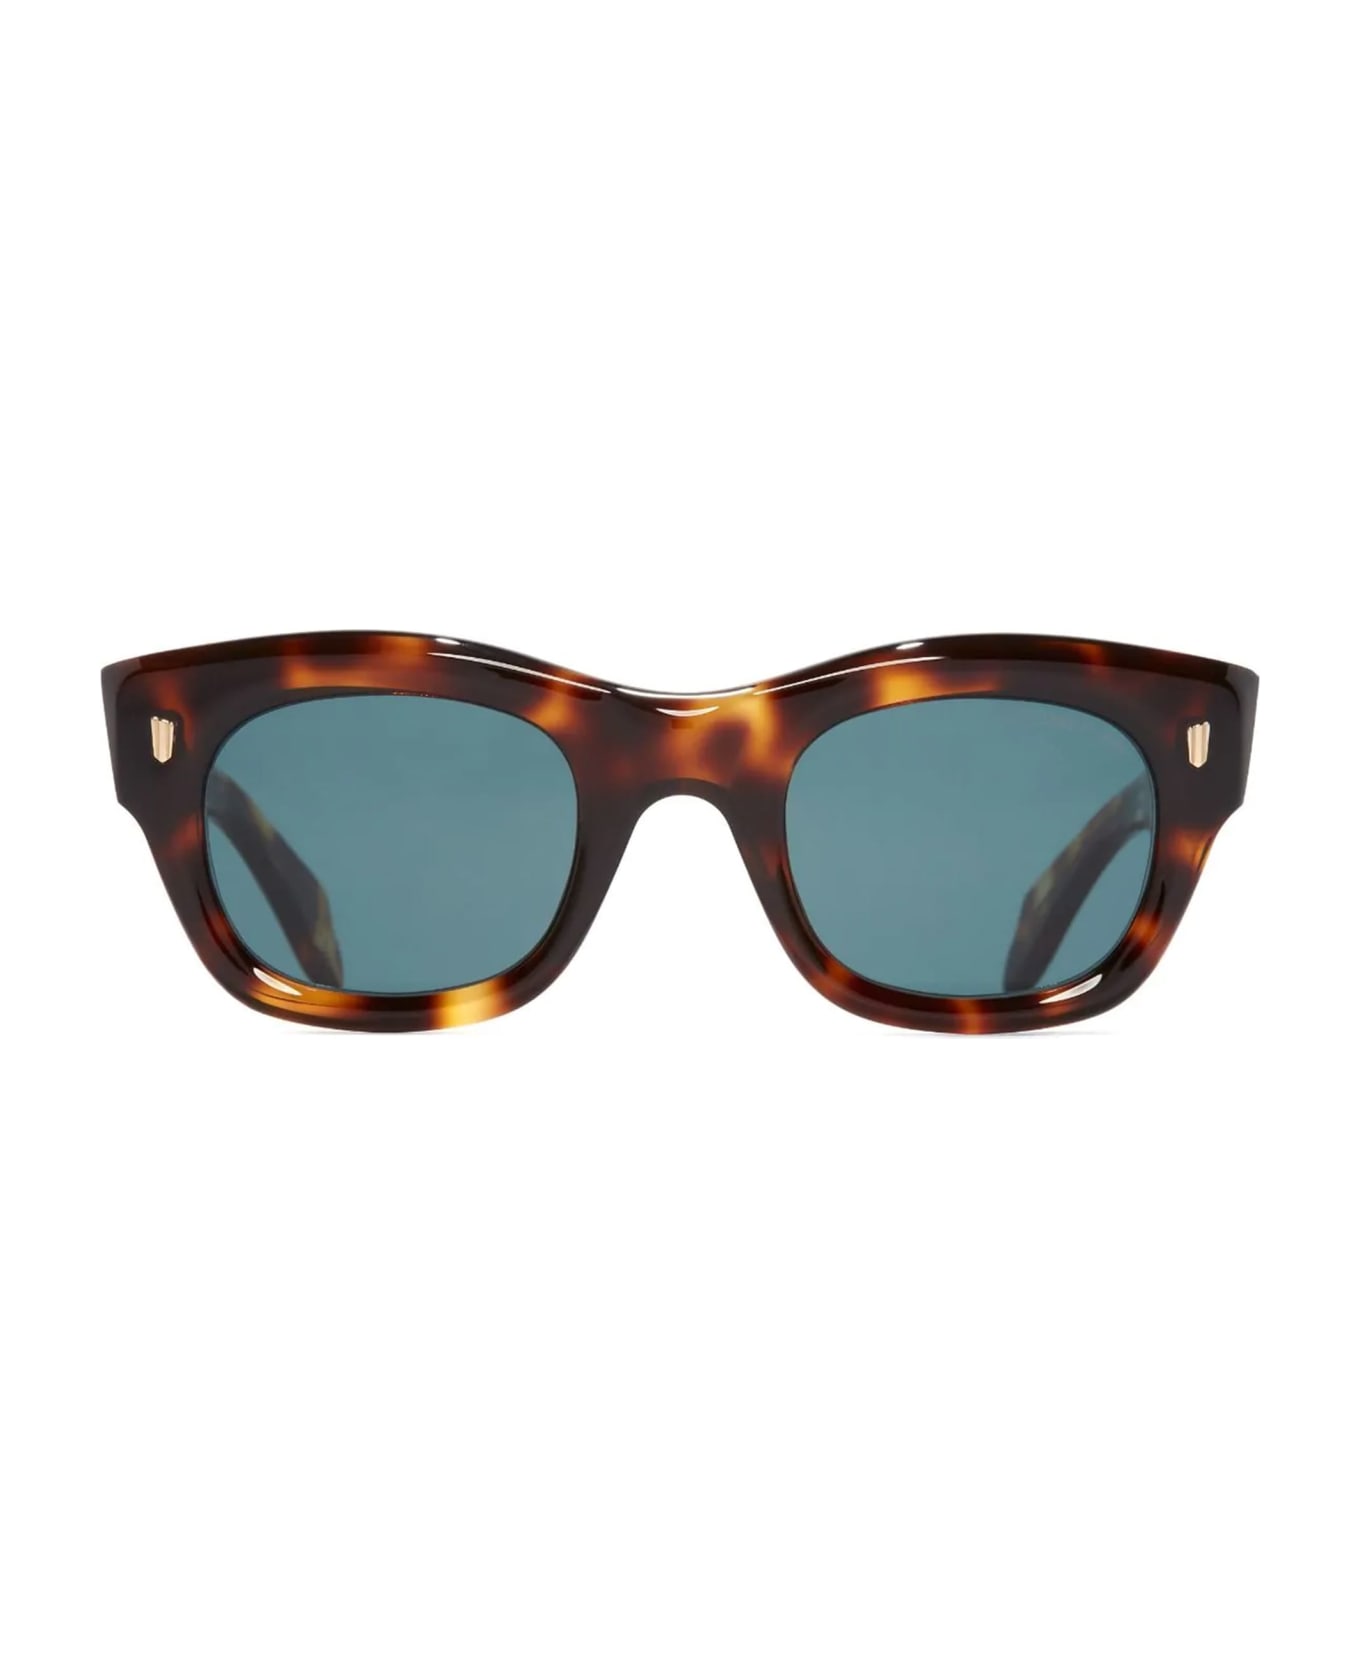 Cutler and Gross 9261 / Old Brown Havana Sunglasses - Havana